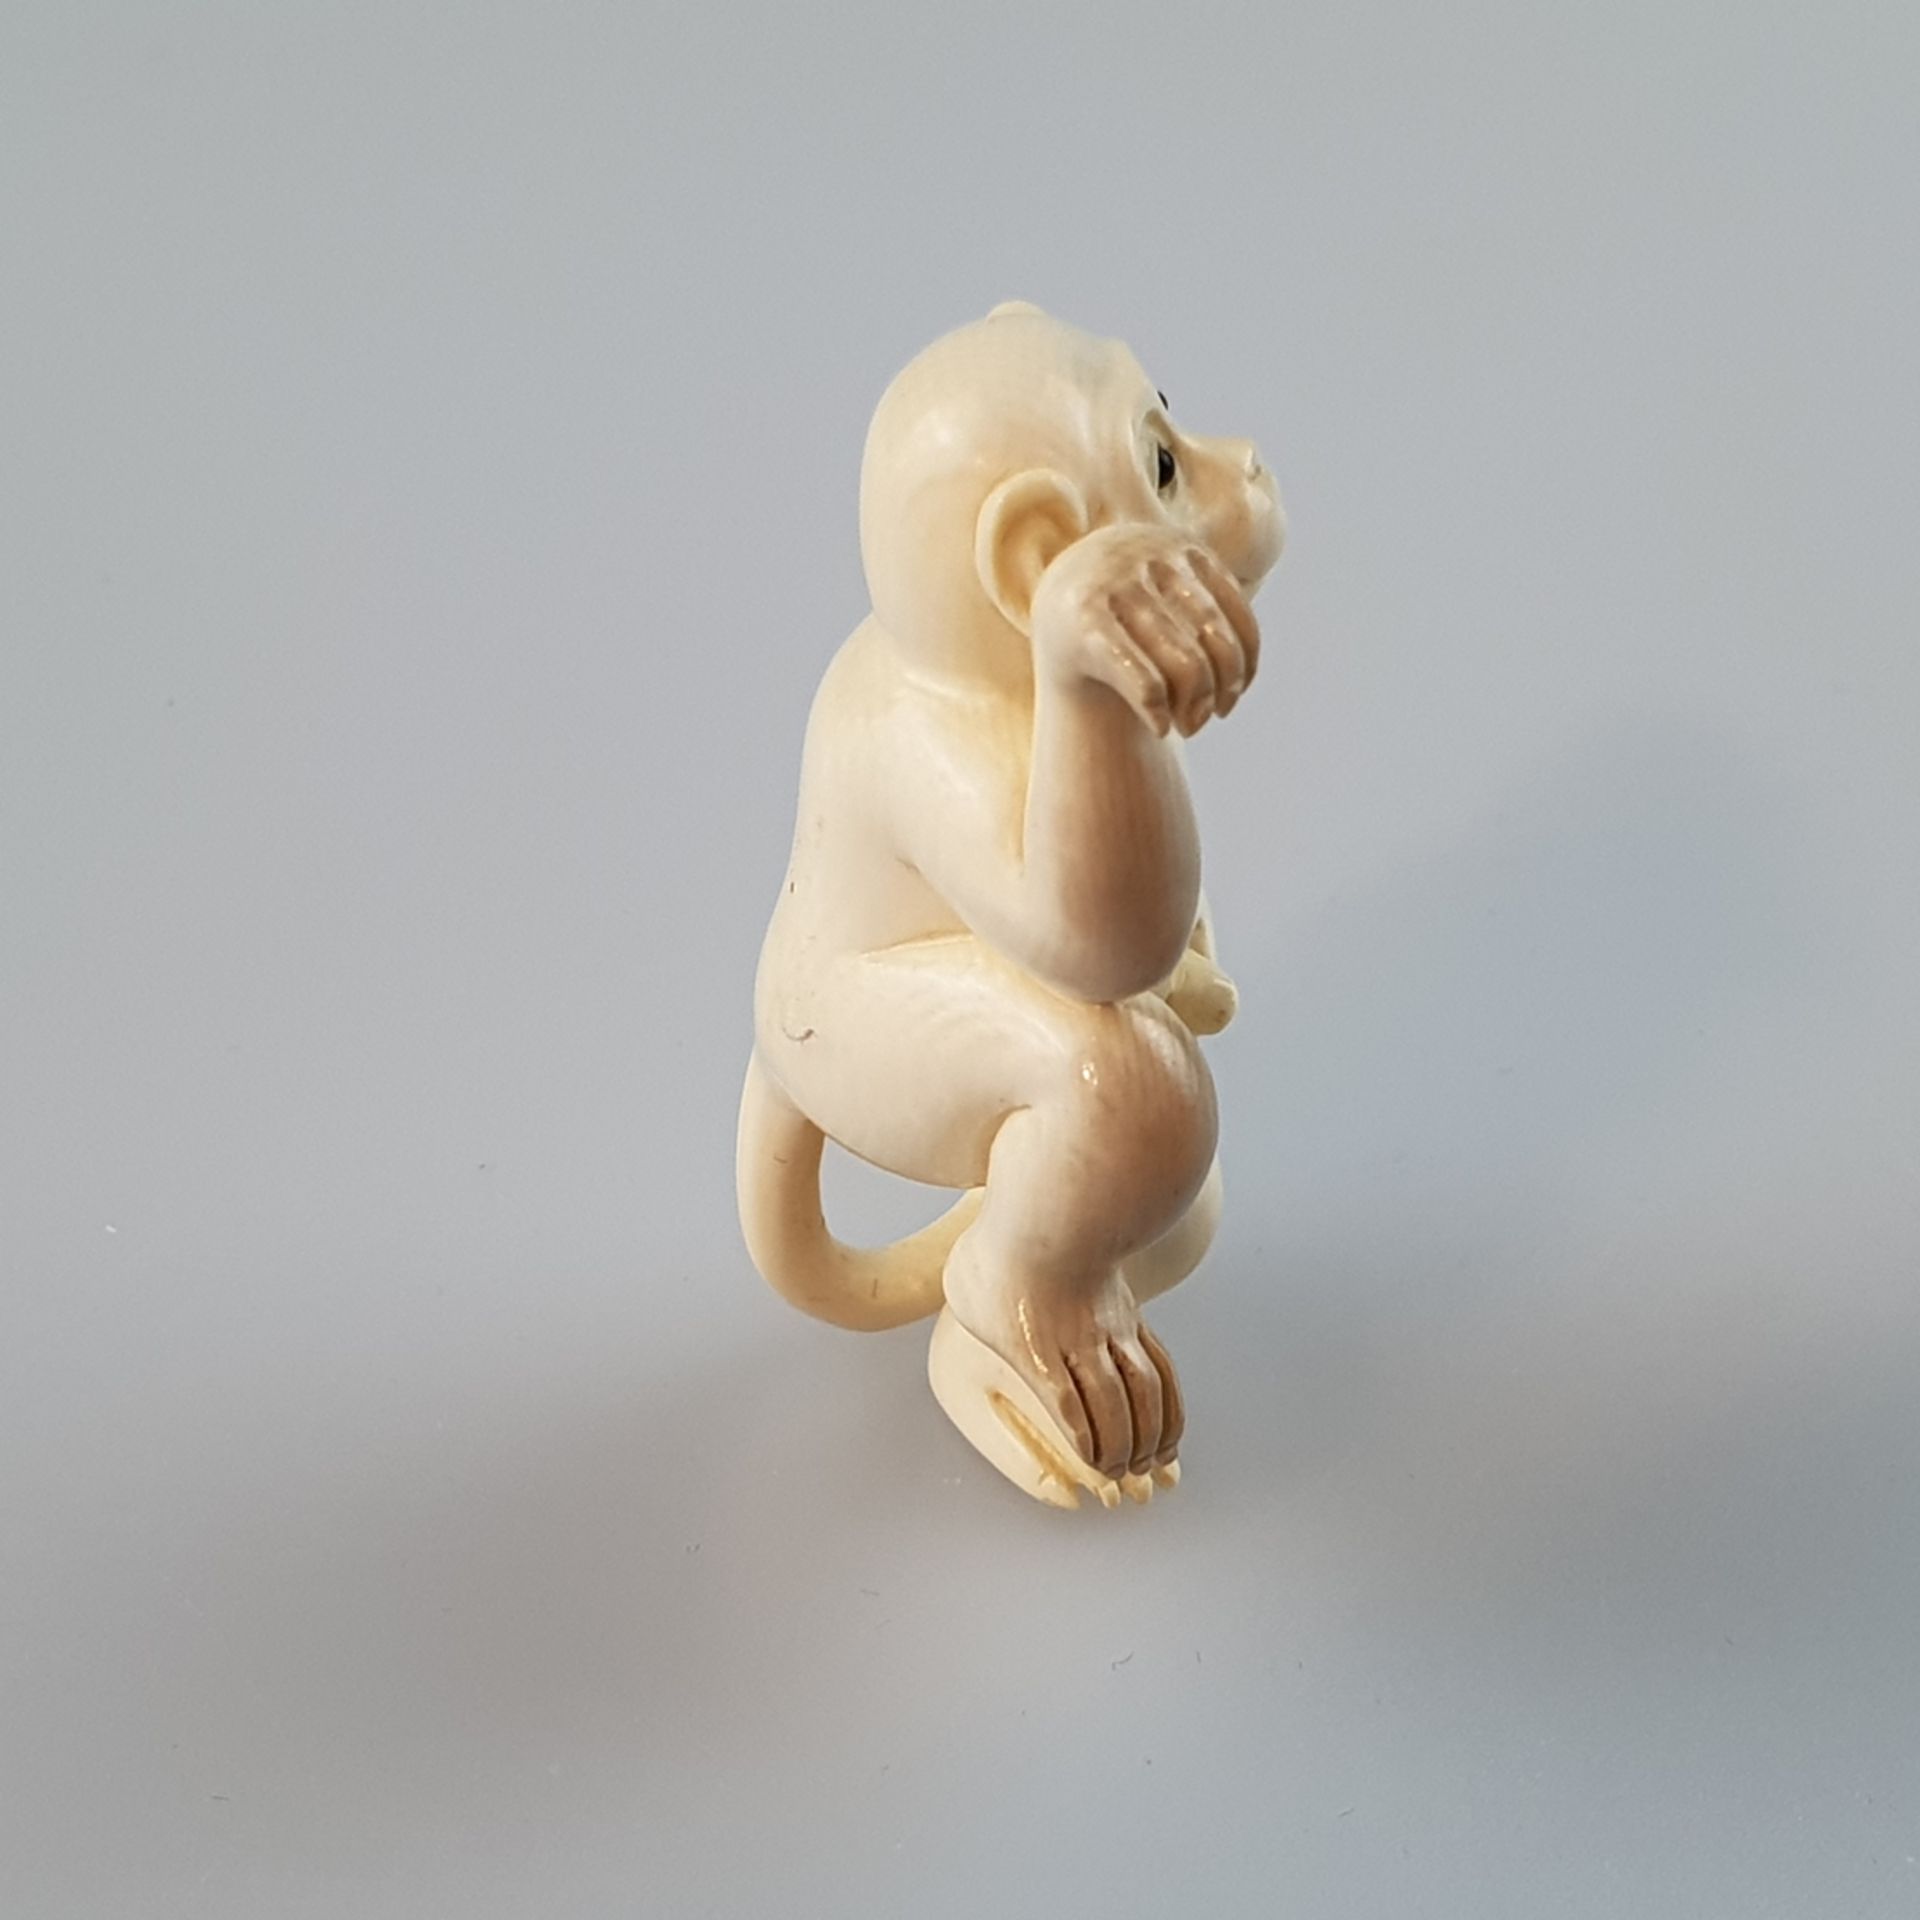 Katabori-Netsuke - Tanzender Affe, feine Elfenbein-Schnitzarbeit, dunkel eingelegte Augen, untersei - Bild 4 aus 6